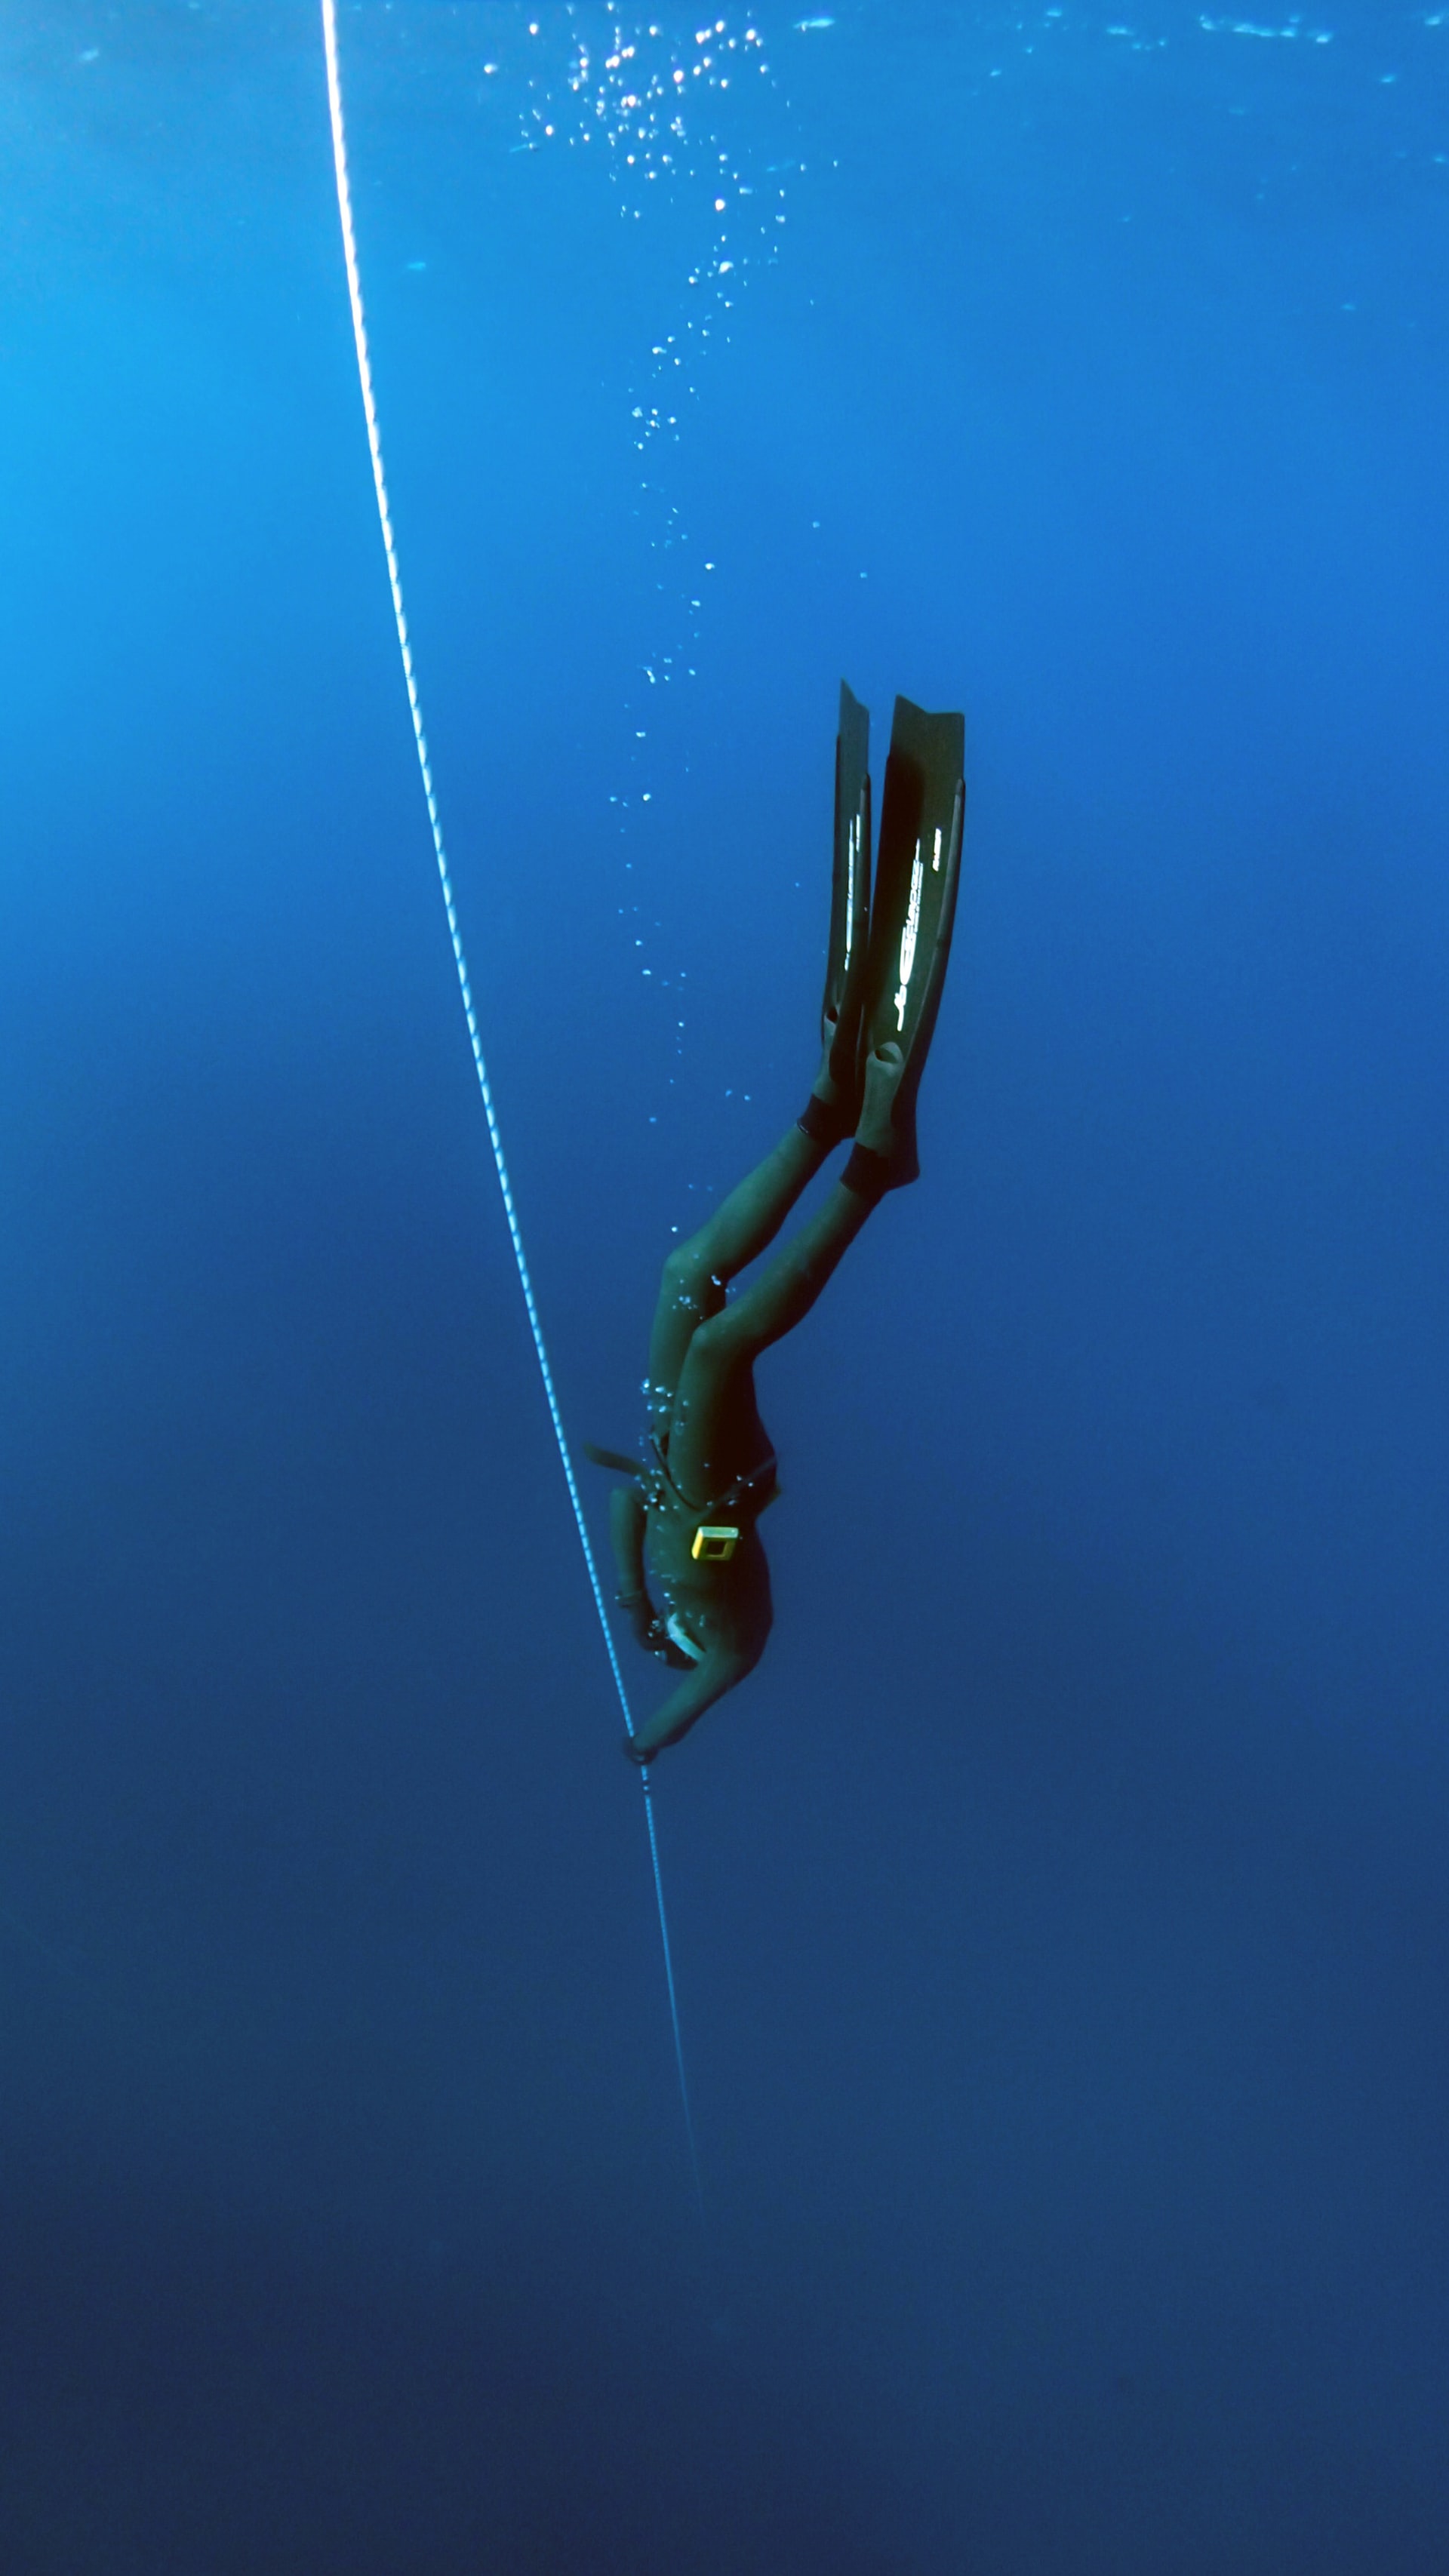 एक गोताखोर पानी के नीचे उतरता है, एक गाइड रस्सी का पीछा करता है जो उनके पार उतरता है।